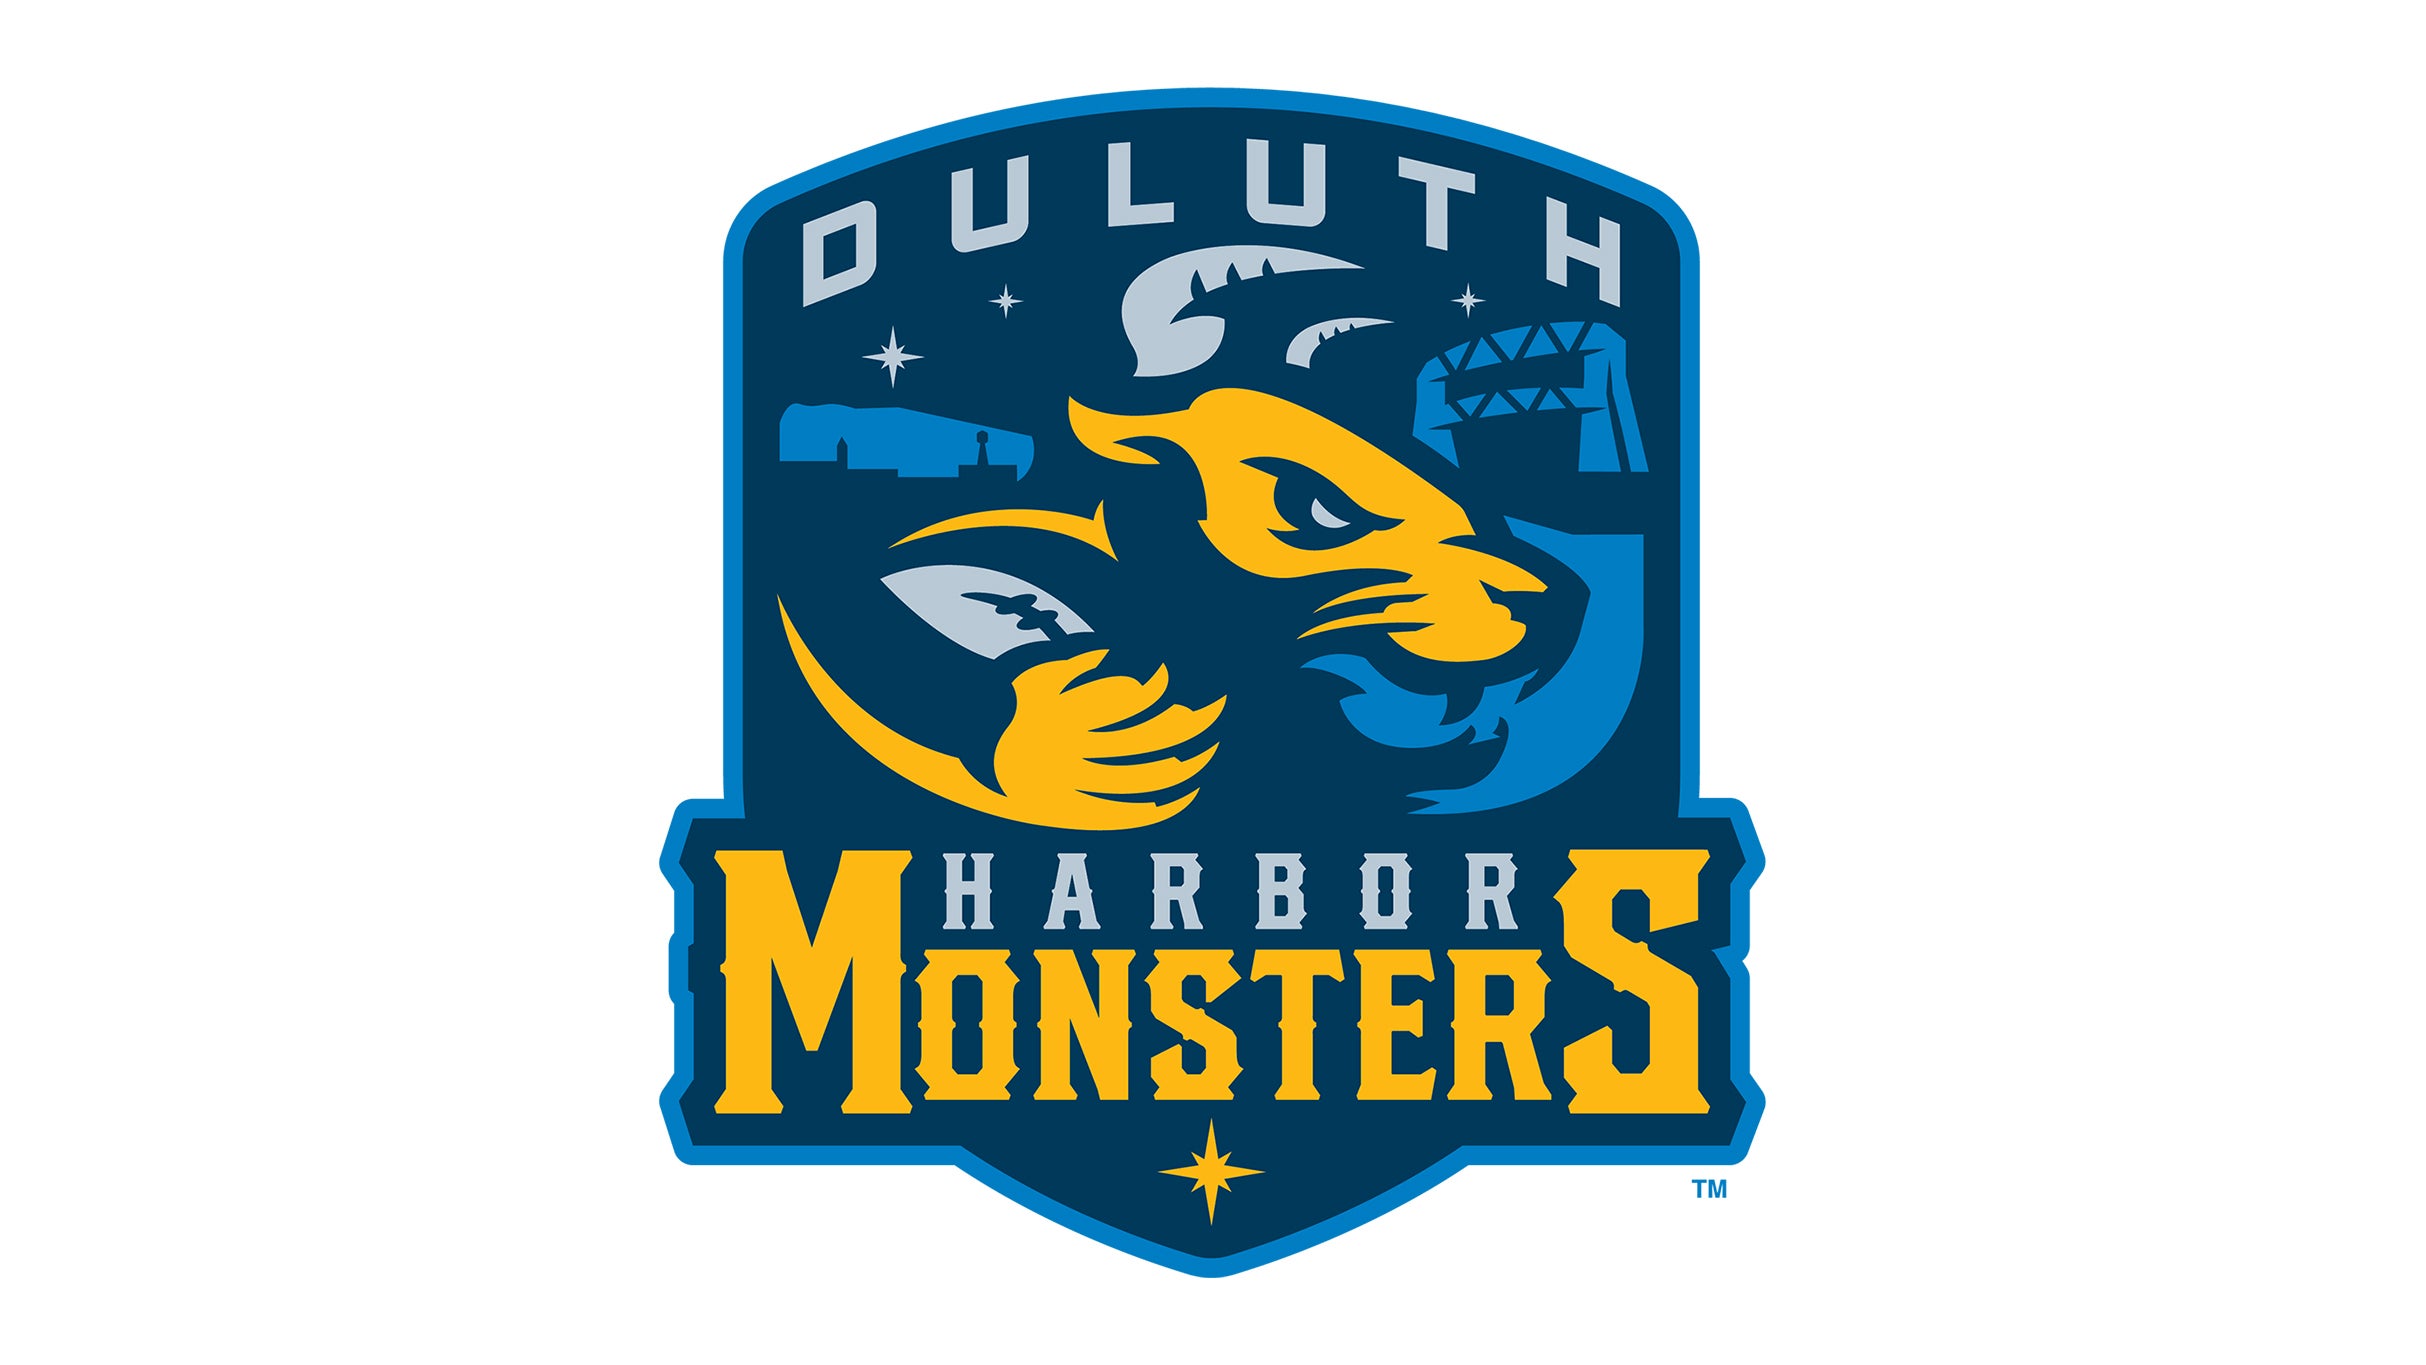 Duluth Harbor Monsters presale information on freepresalepasswords.com